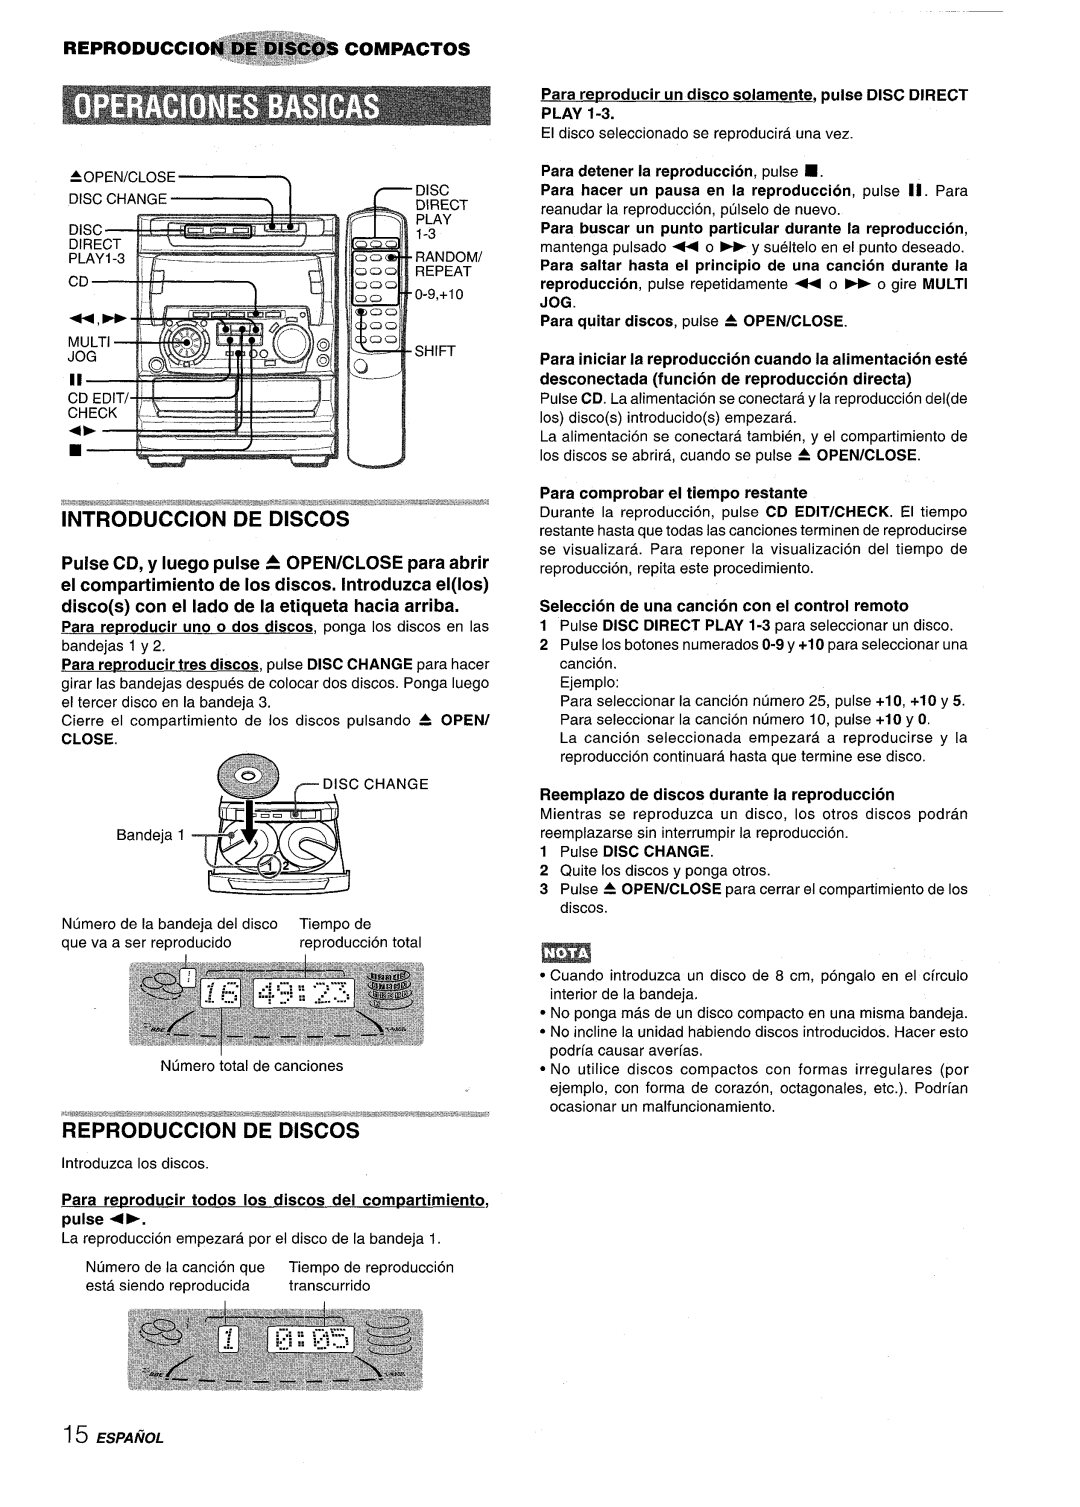 Sony NSX-A707 manual Reproduction De Discos, discos con el Iado de la etiqueta hacia arriba, REpRoDuccl~COMPACTOS 